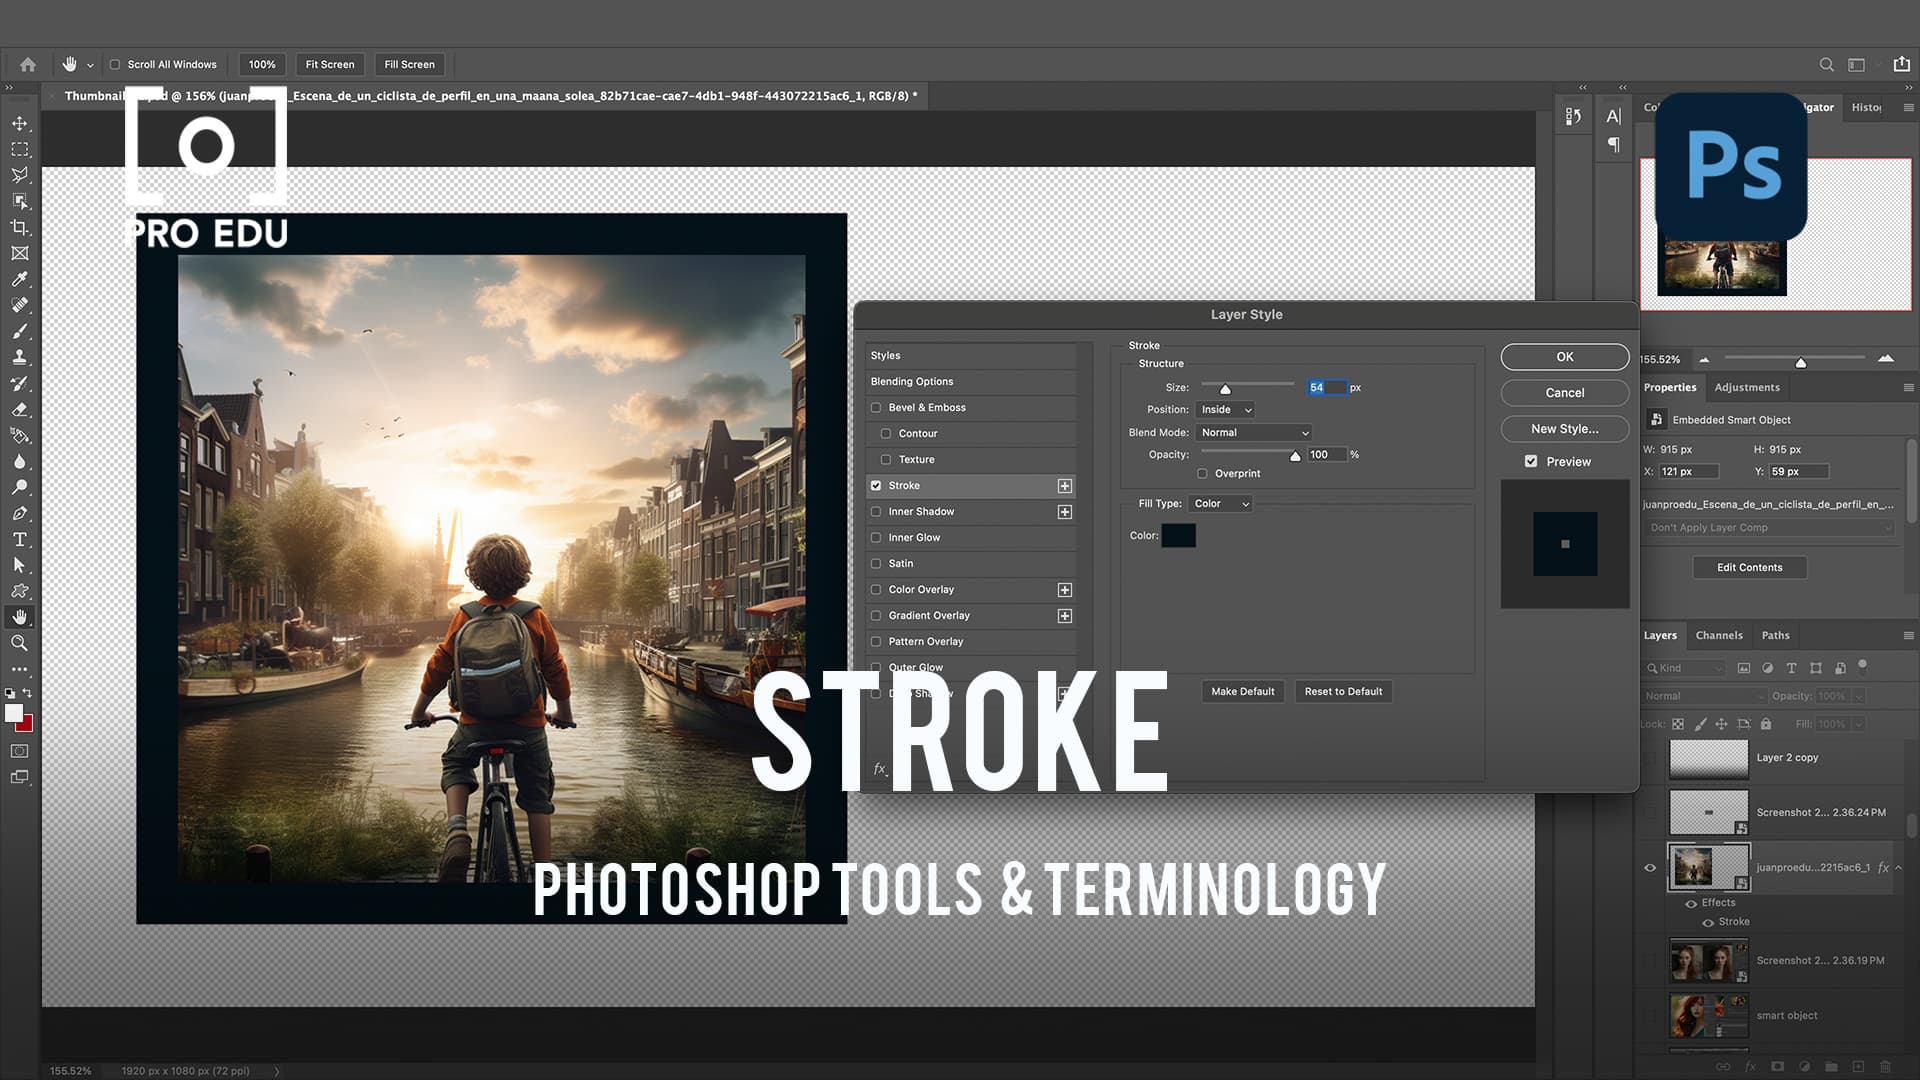 Stroke Feature in Photoshop - PRO EDU Beginner's Guide